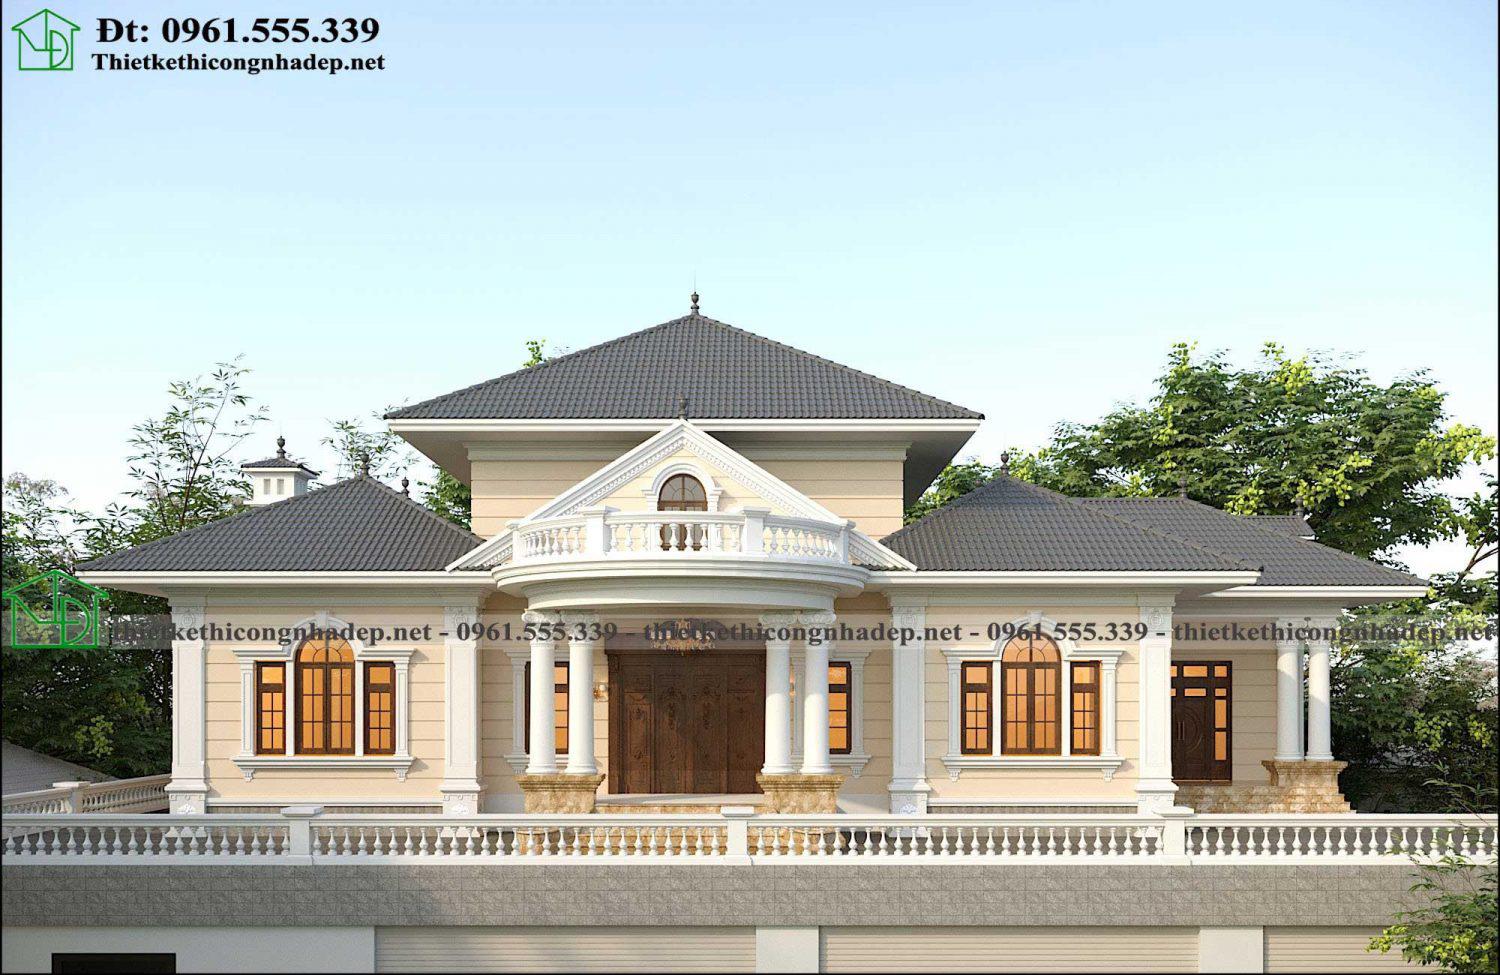 Thiết kế biệt thự cổ điển đẹp sang trọng tại Phú Thọ NDBT1T126